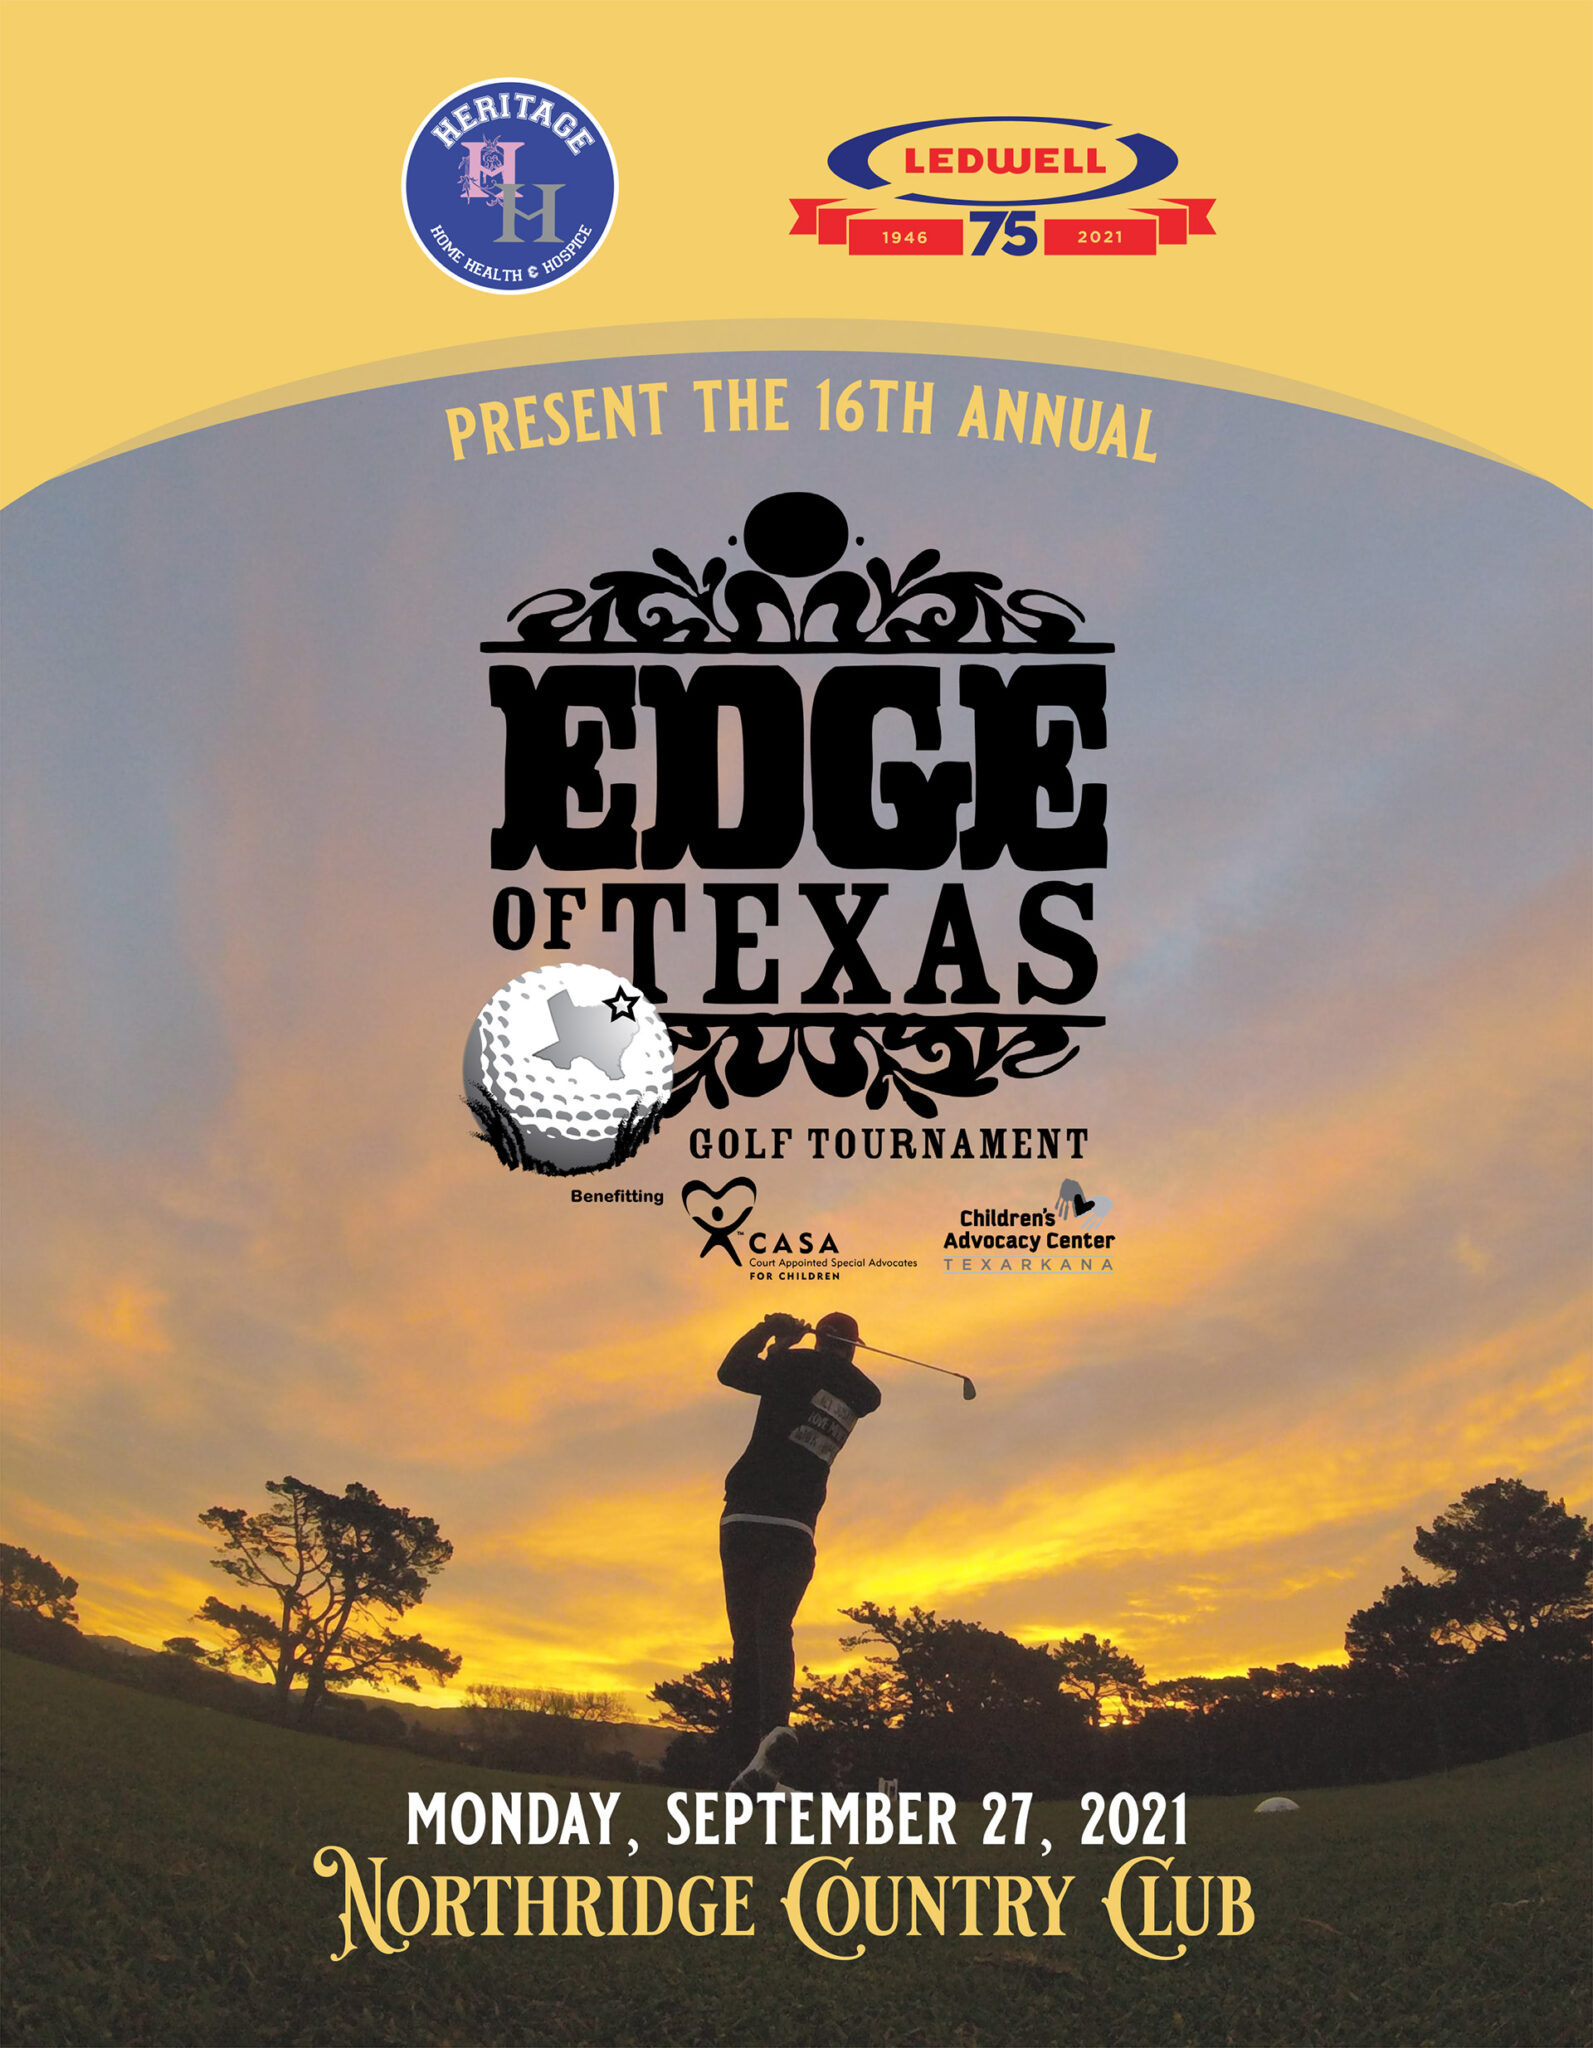 CASA Edge of Texas Golf Tournament 2021 CASA Texarkana